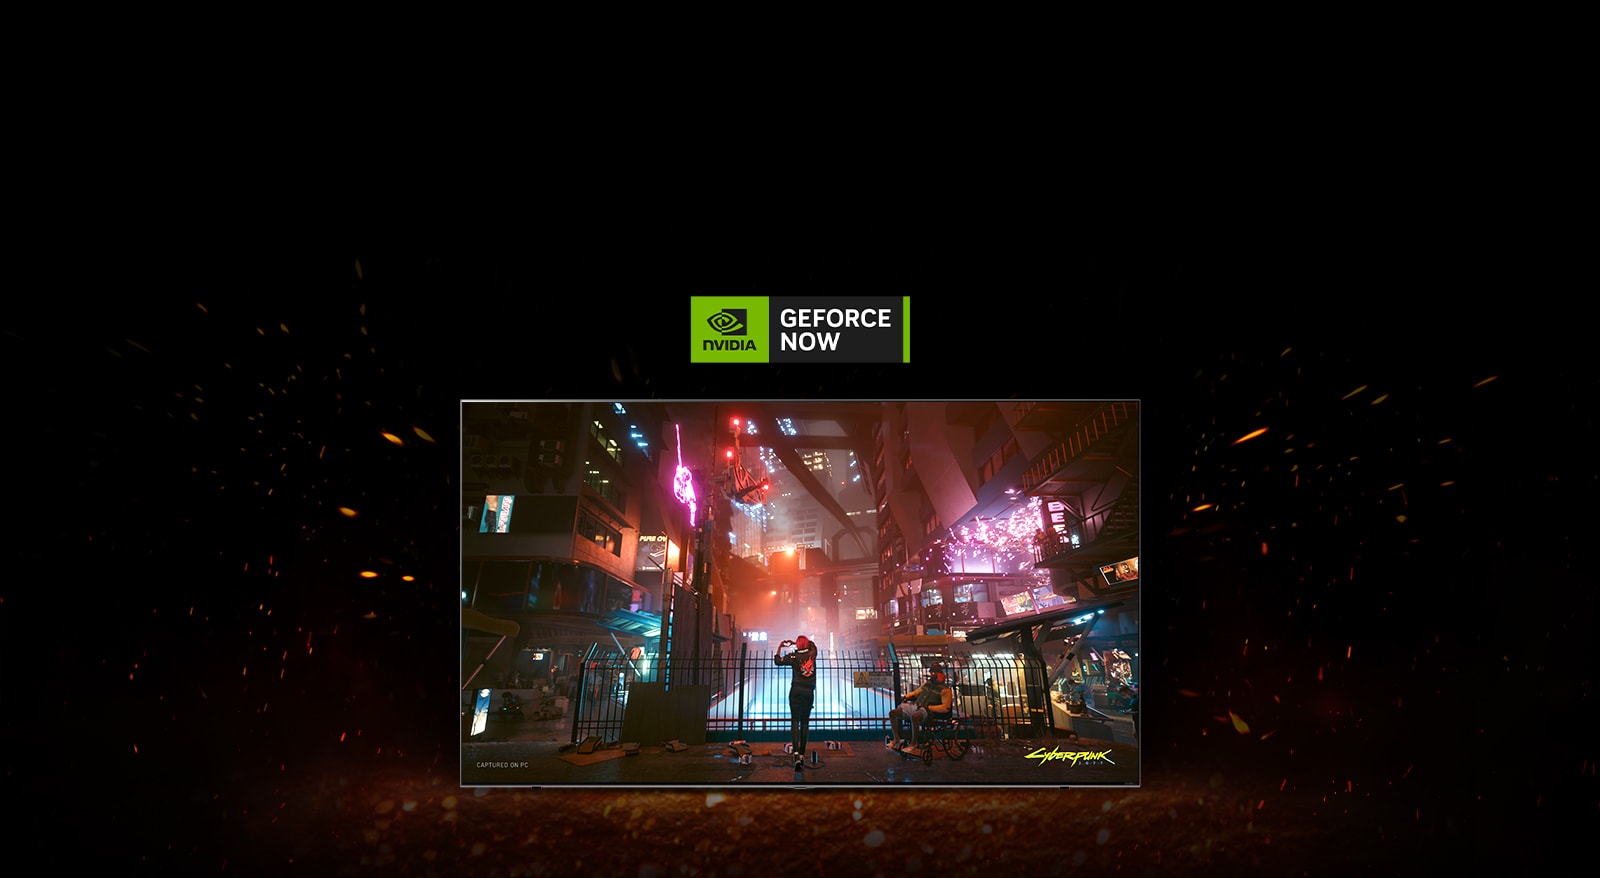 להבות ניצתות סביב הטלוויזיה שבה מוצג המשחק Cyberpunk. הלוגו של Geforce now מוצג מעל הטלוויזיה.